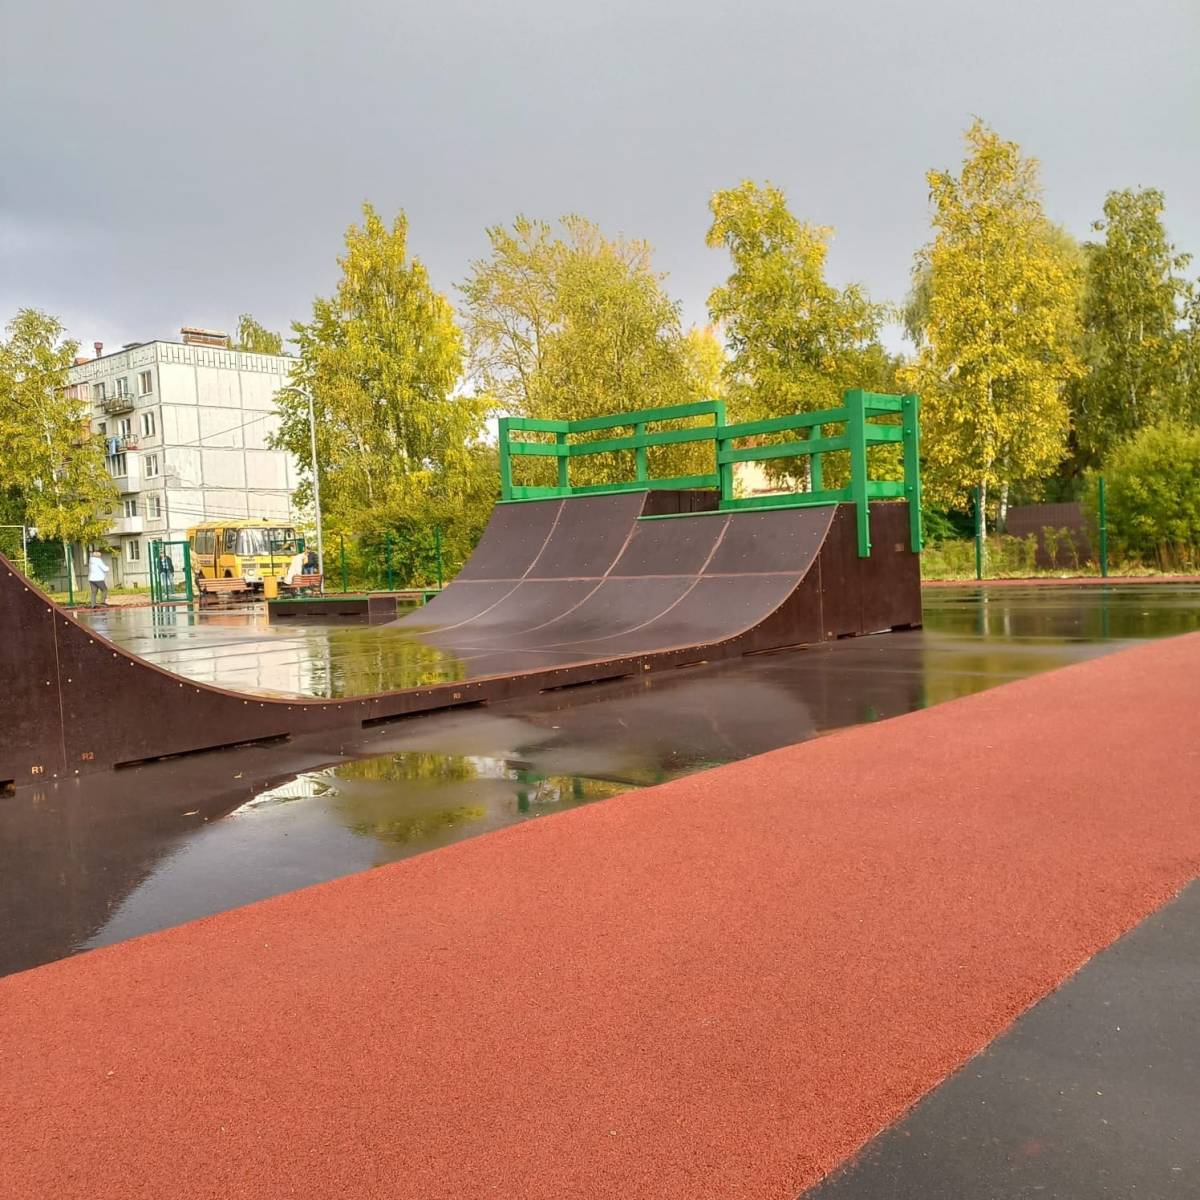 В Панковке появилась рекреационная зона, предназначенная для скейтбординга, скутеров и агрессивного катания на роликовых коньках.